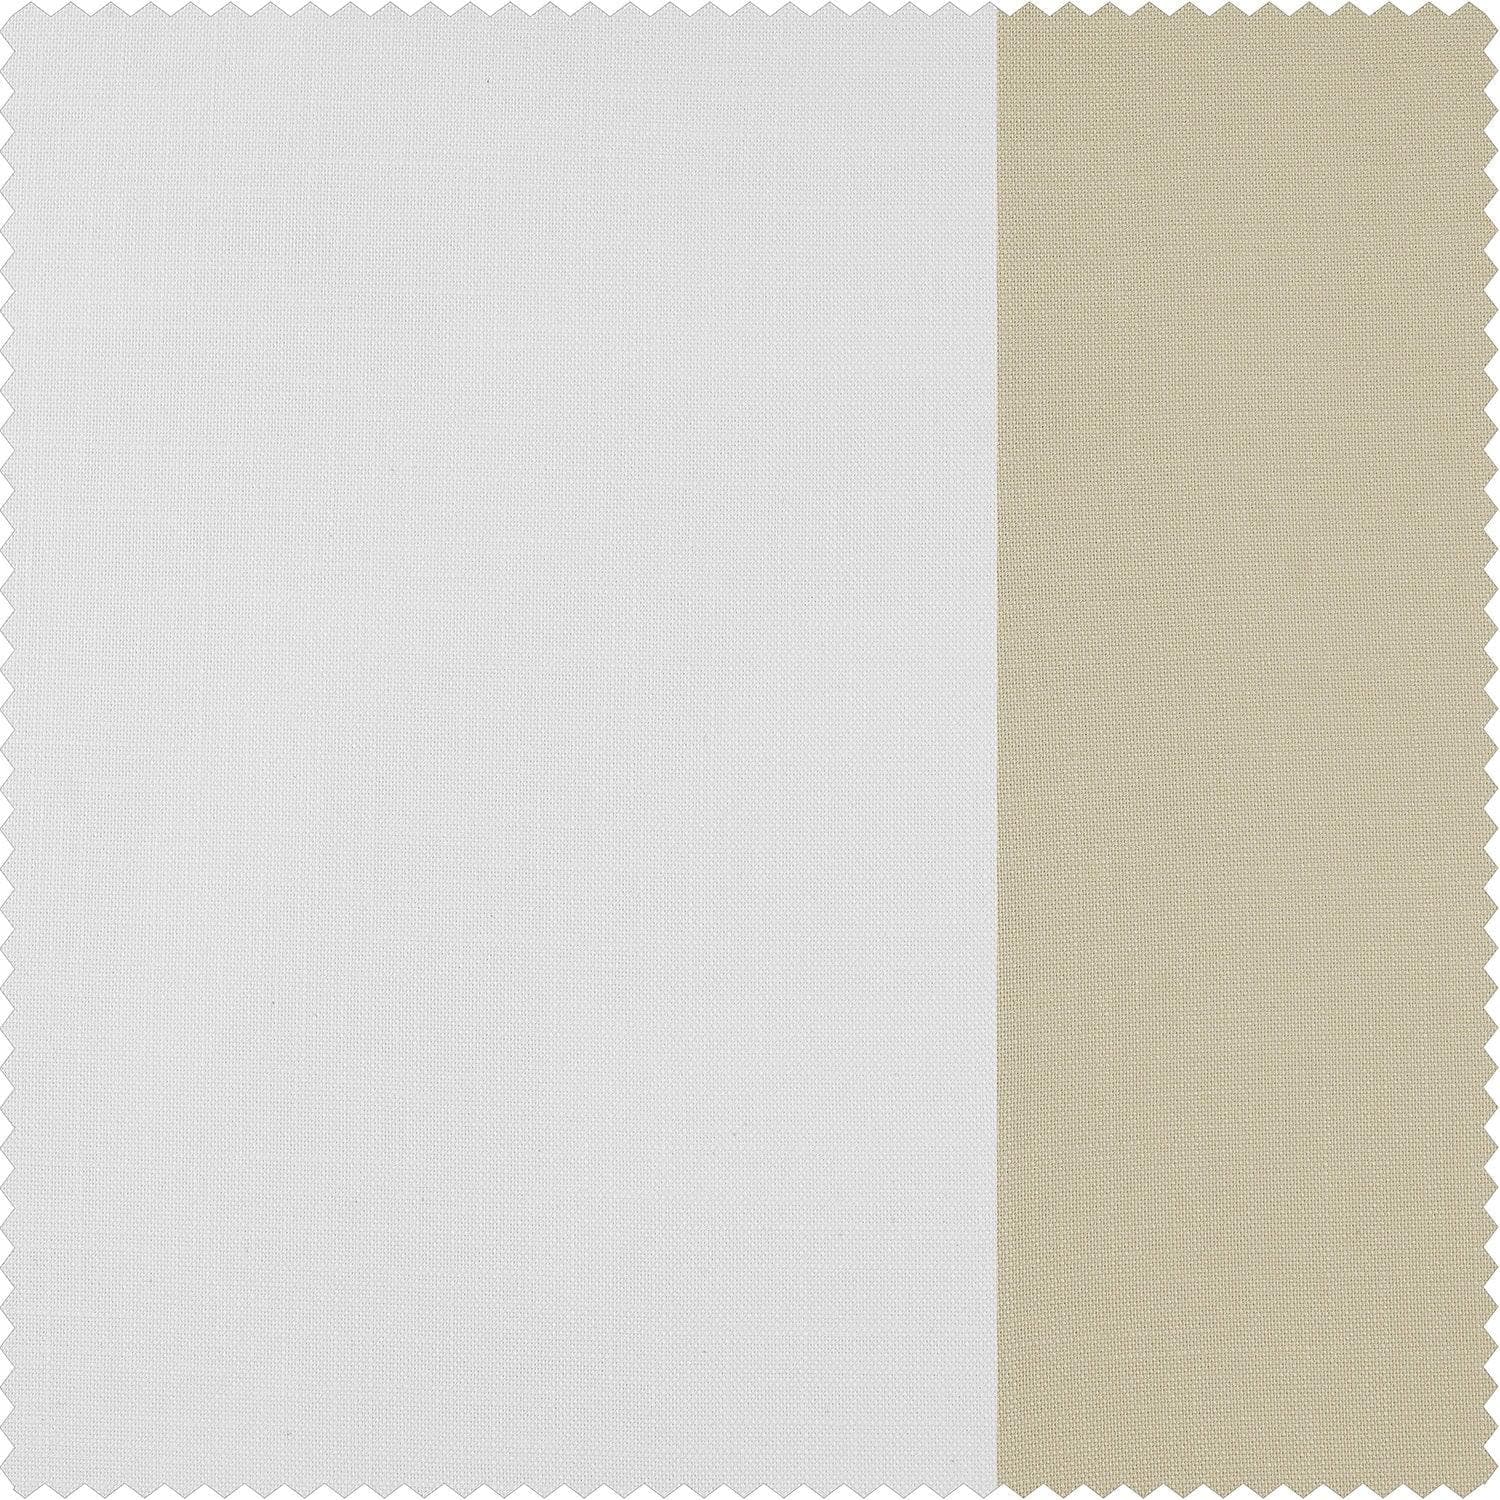 White & Beige Bold Frame Bordered Dune Textured Cotton Room Darkening Curtain